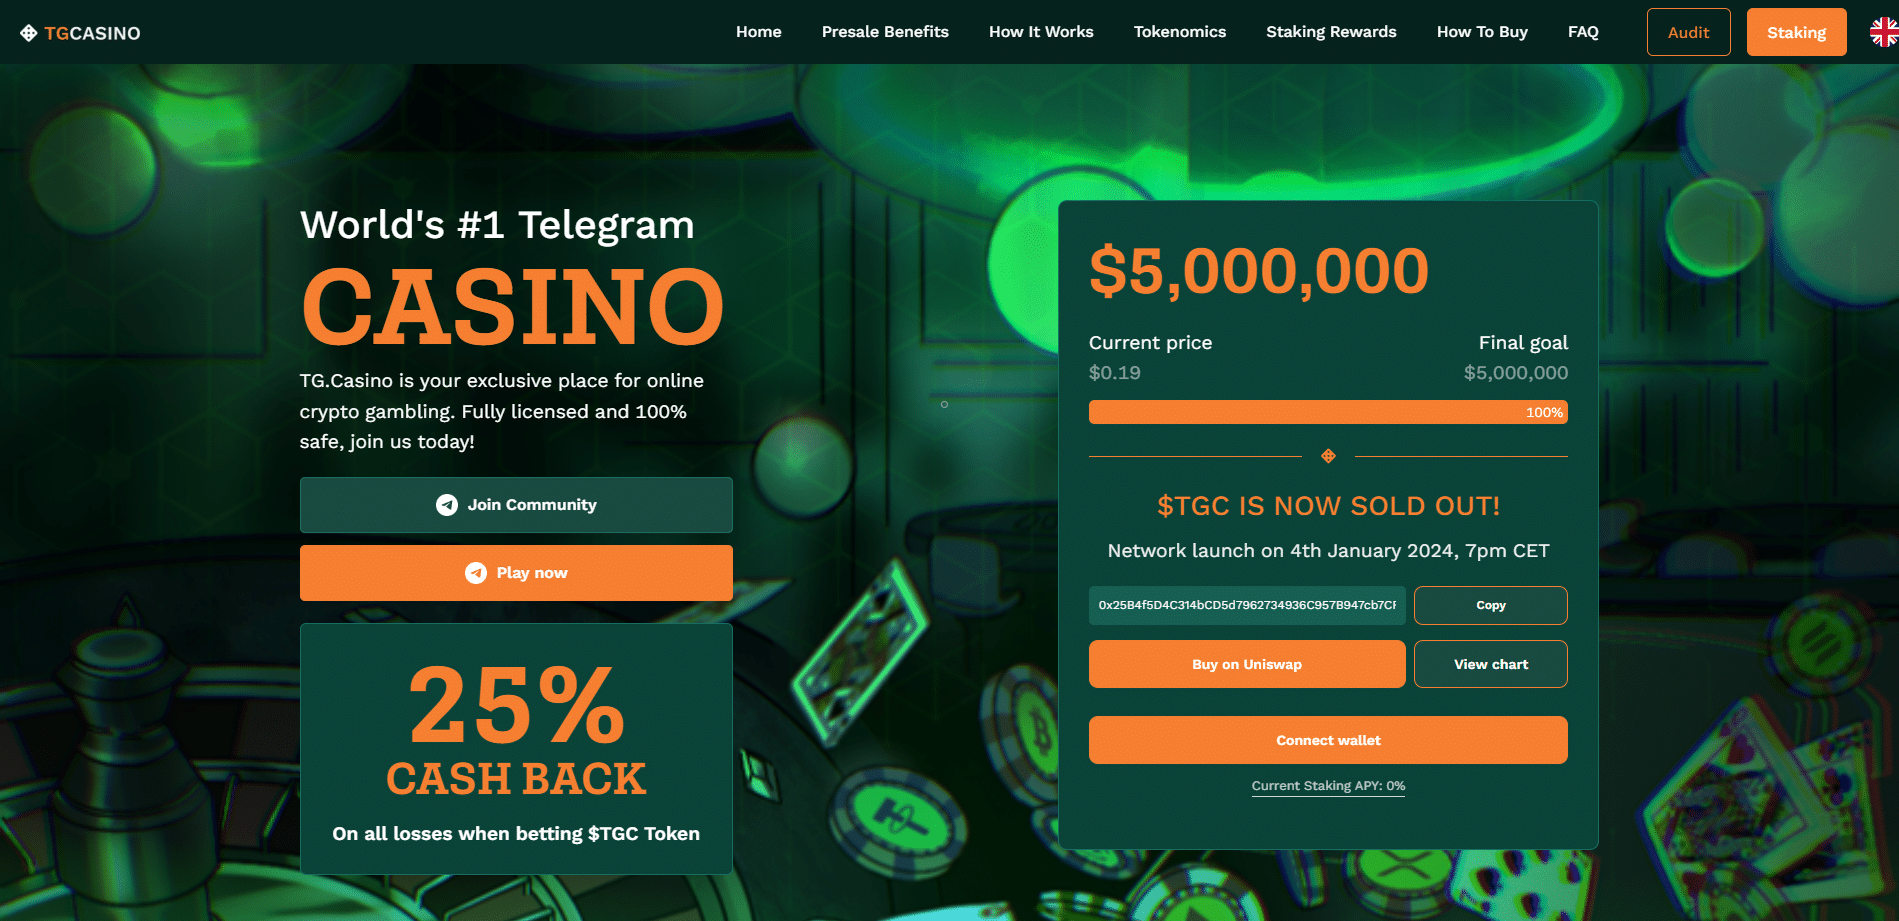 TG.Casino's full screen mode populair onder Telegram gebruikers